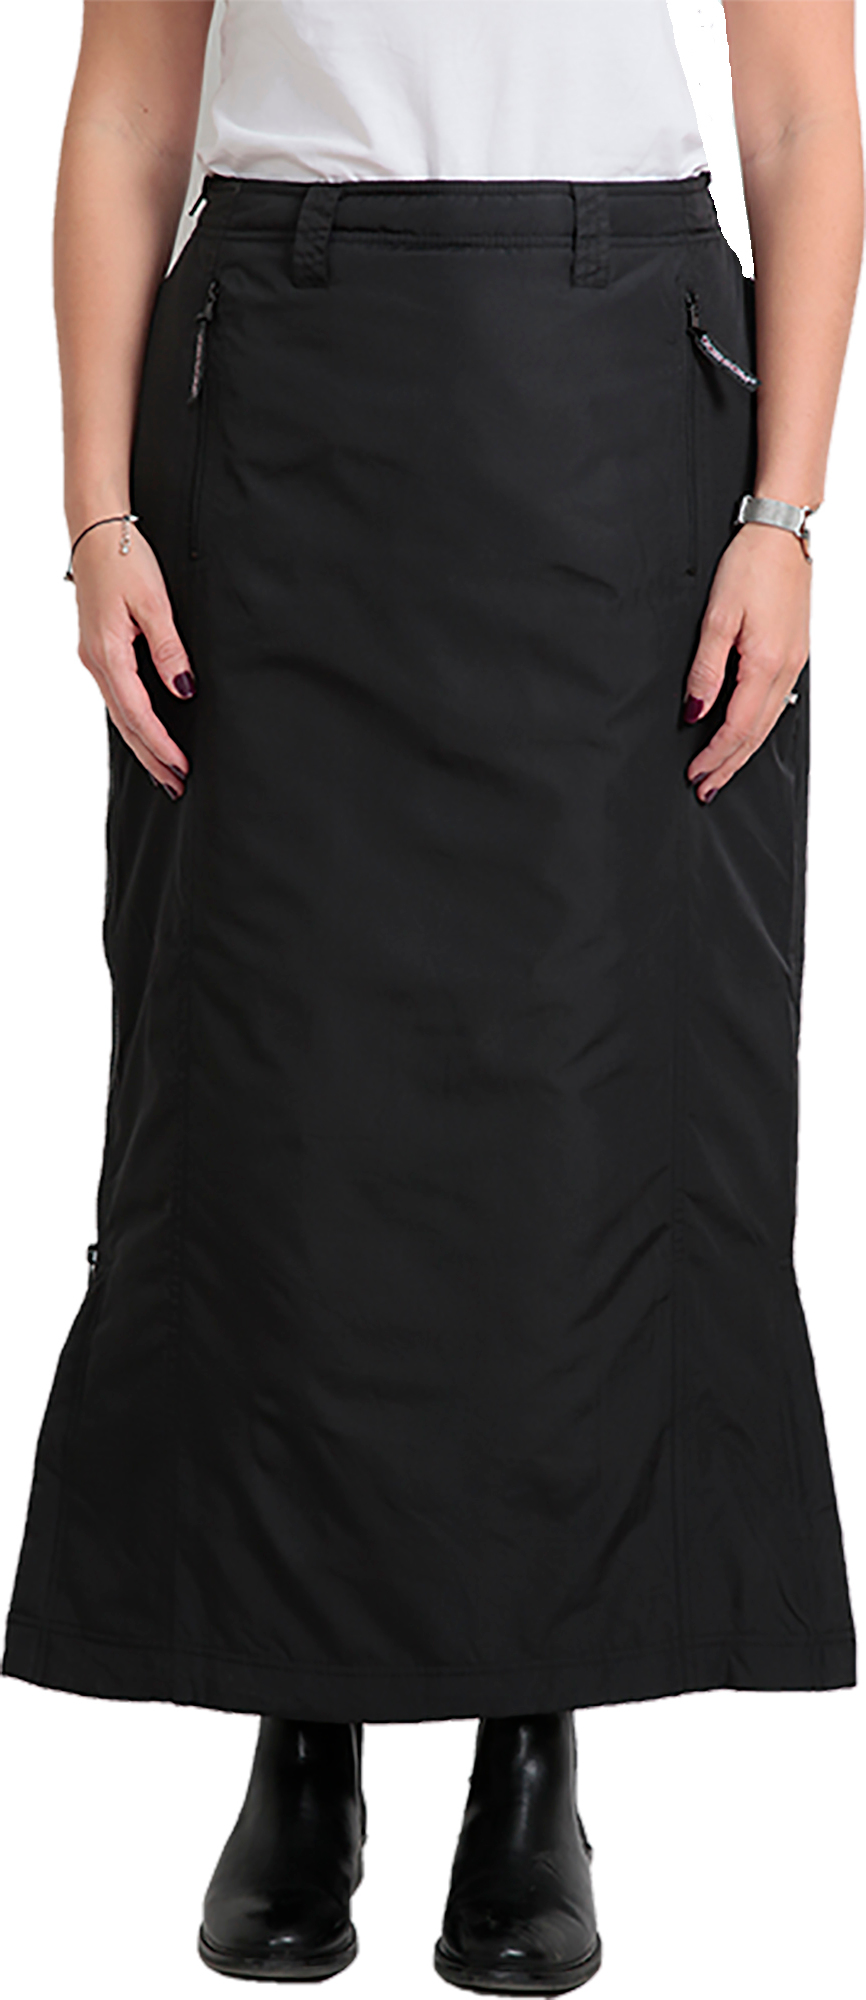 Dobsom Comfort Skirt Black